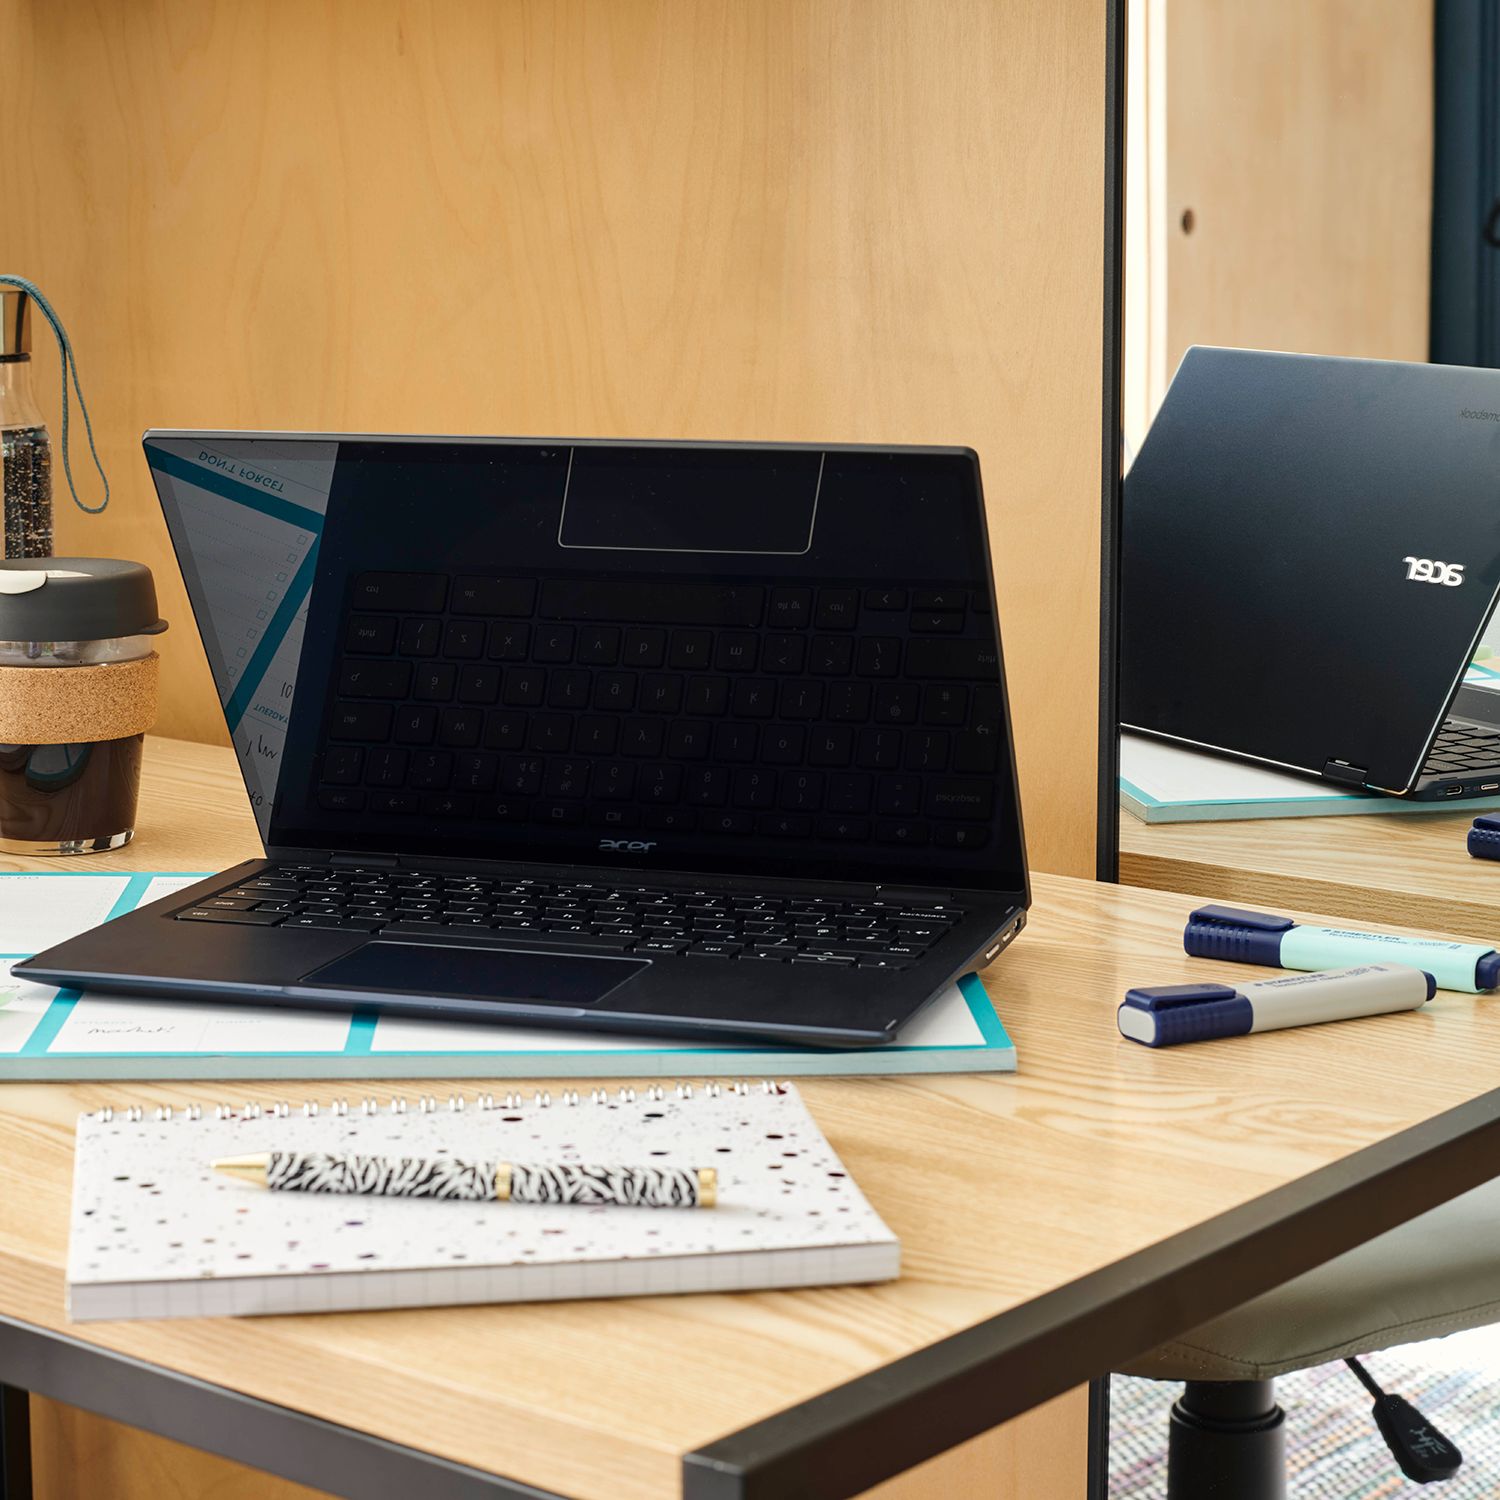 Standard laptop or desktop set-up